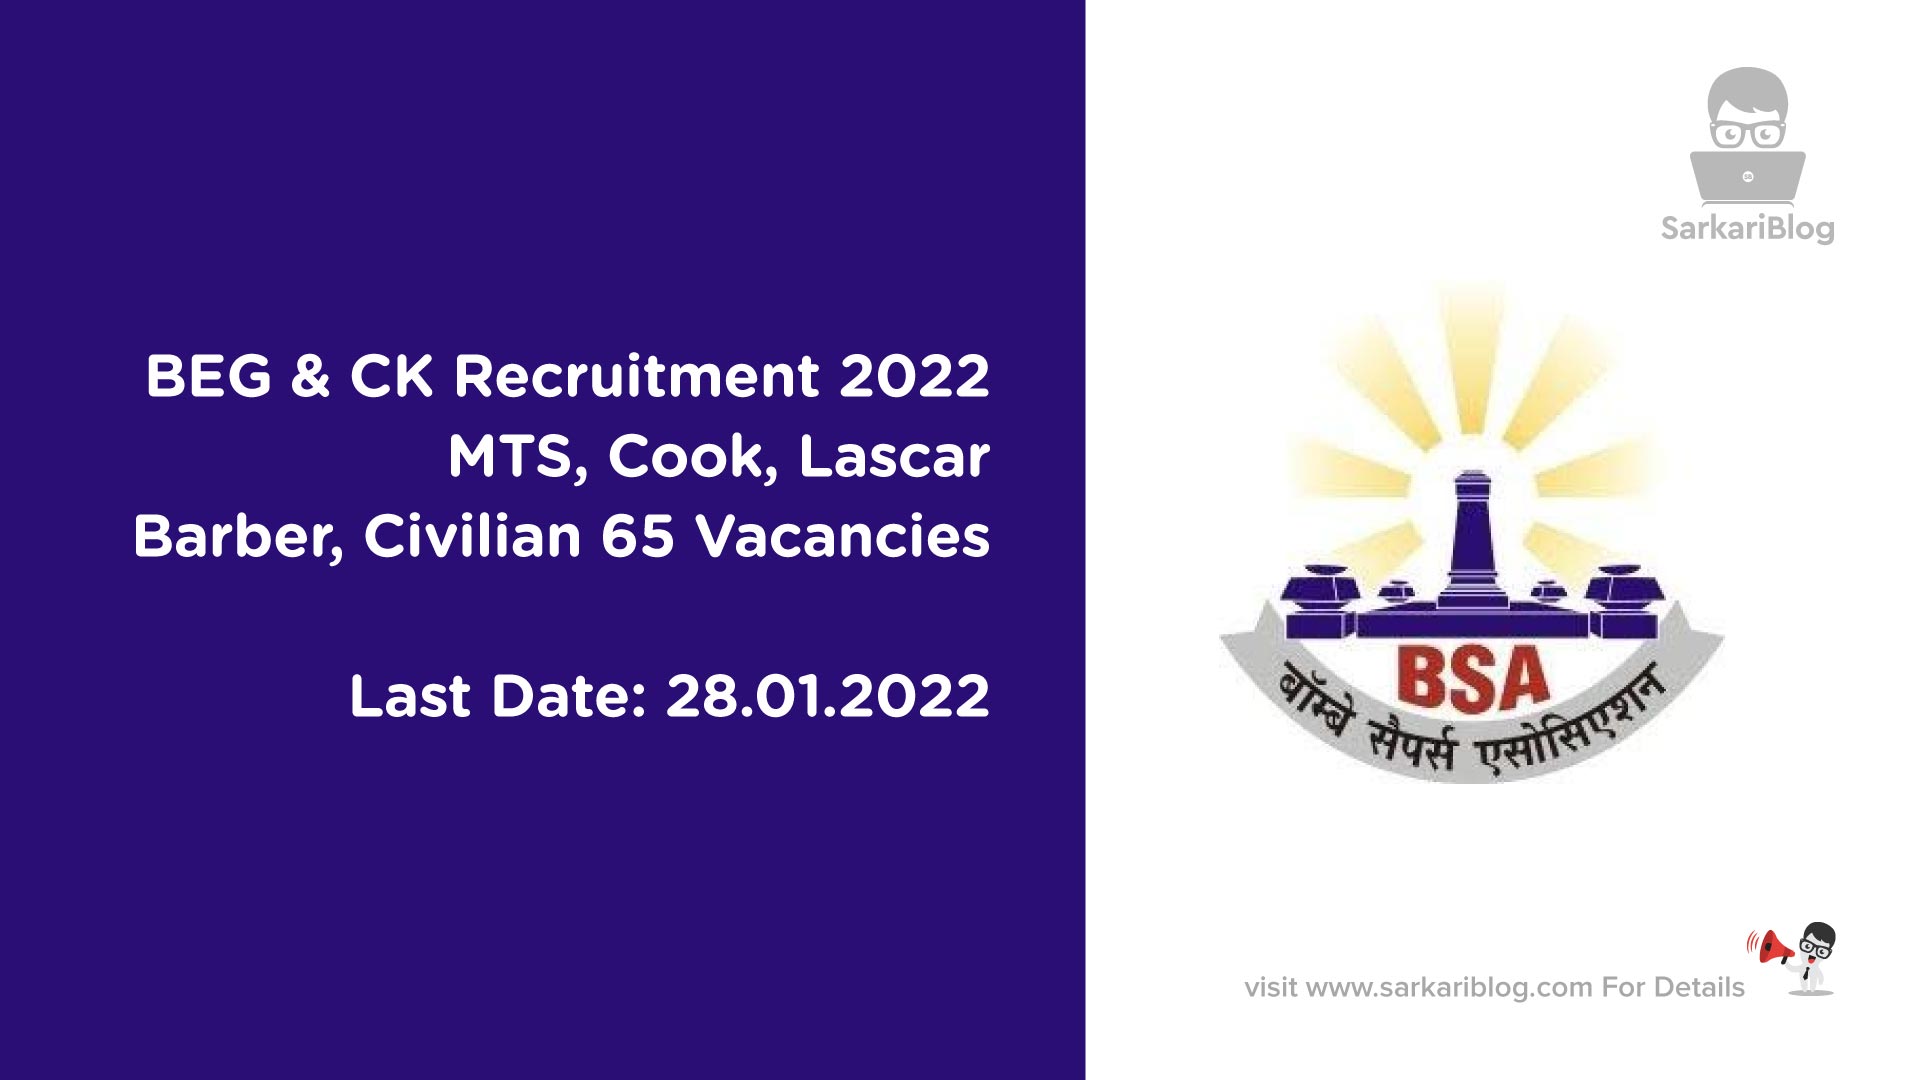 BEG & CK Recruitment 2022 - MTS, Cook, Lascar, Barber, Civilian 65 Vacancies